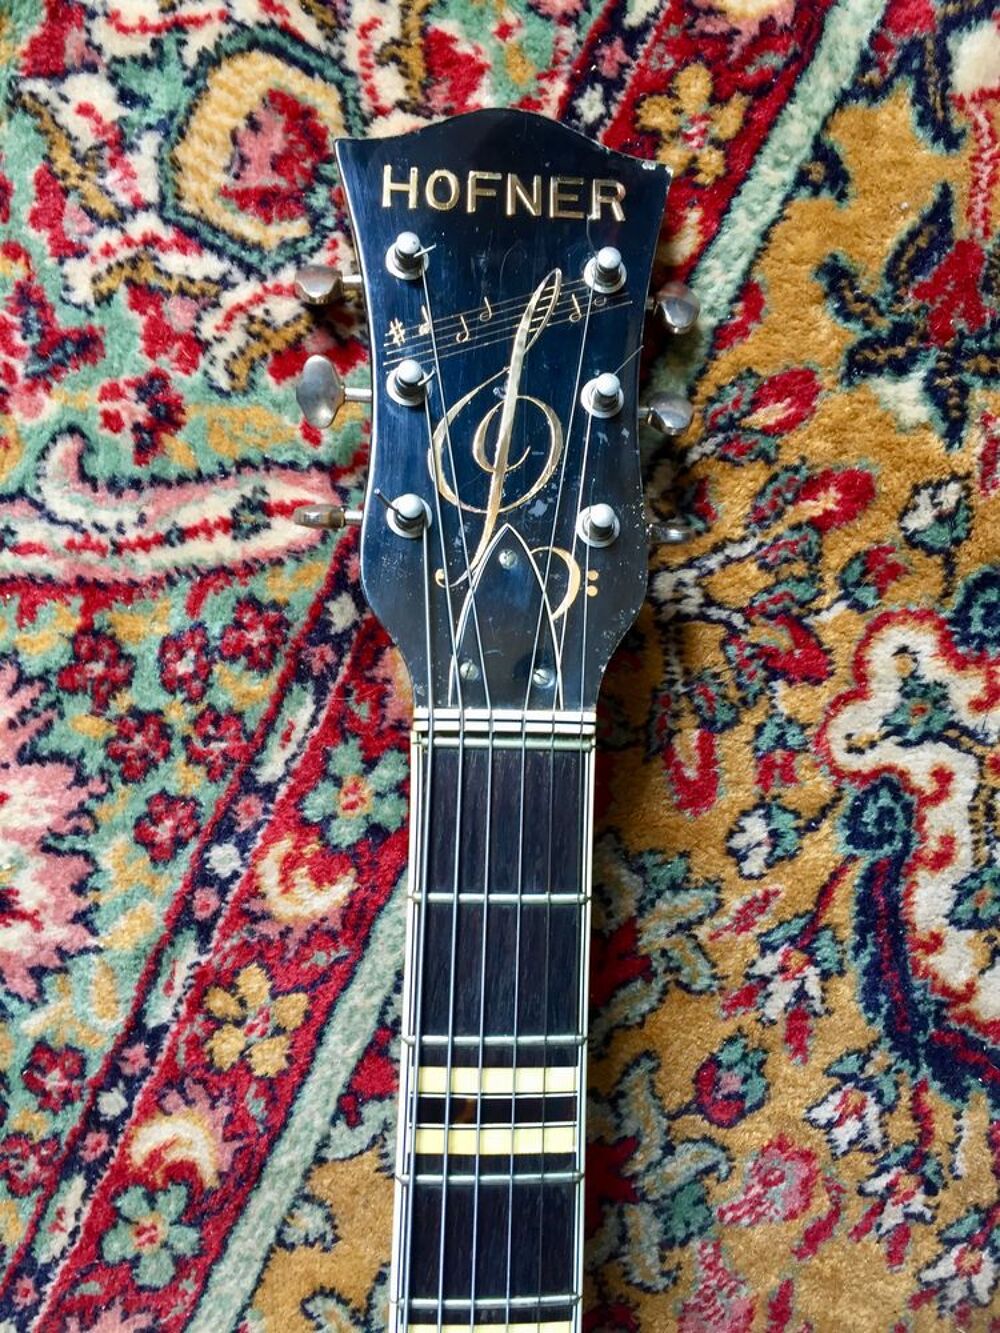 Guitare acoustique Hofner 463 de 1961 
Instruments de musique